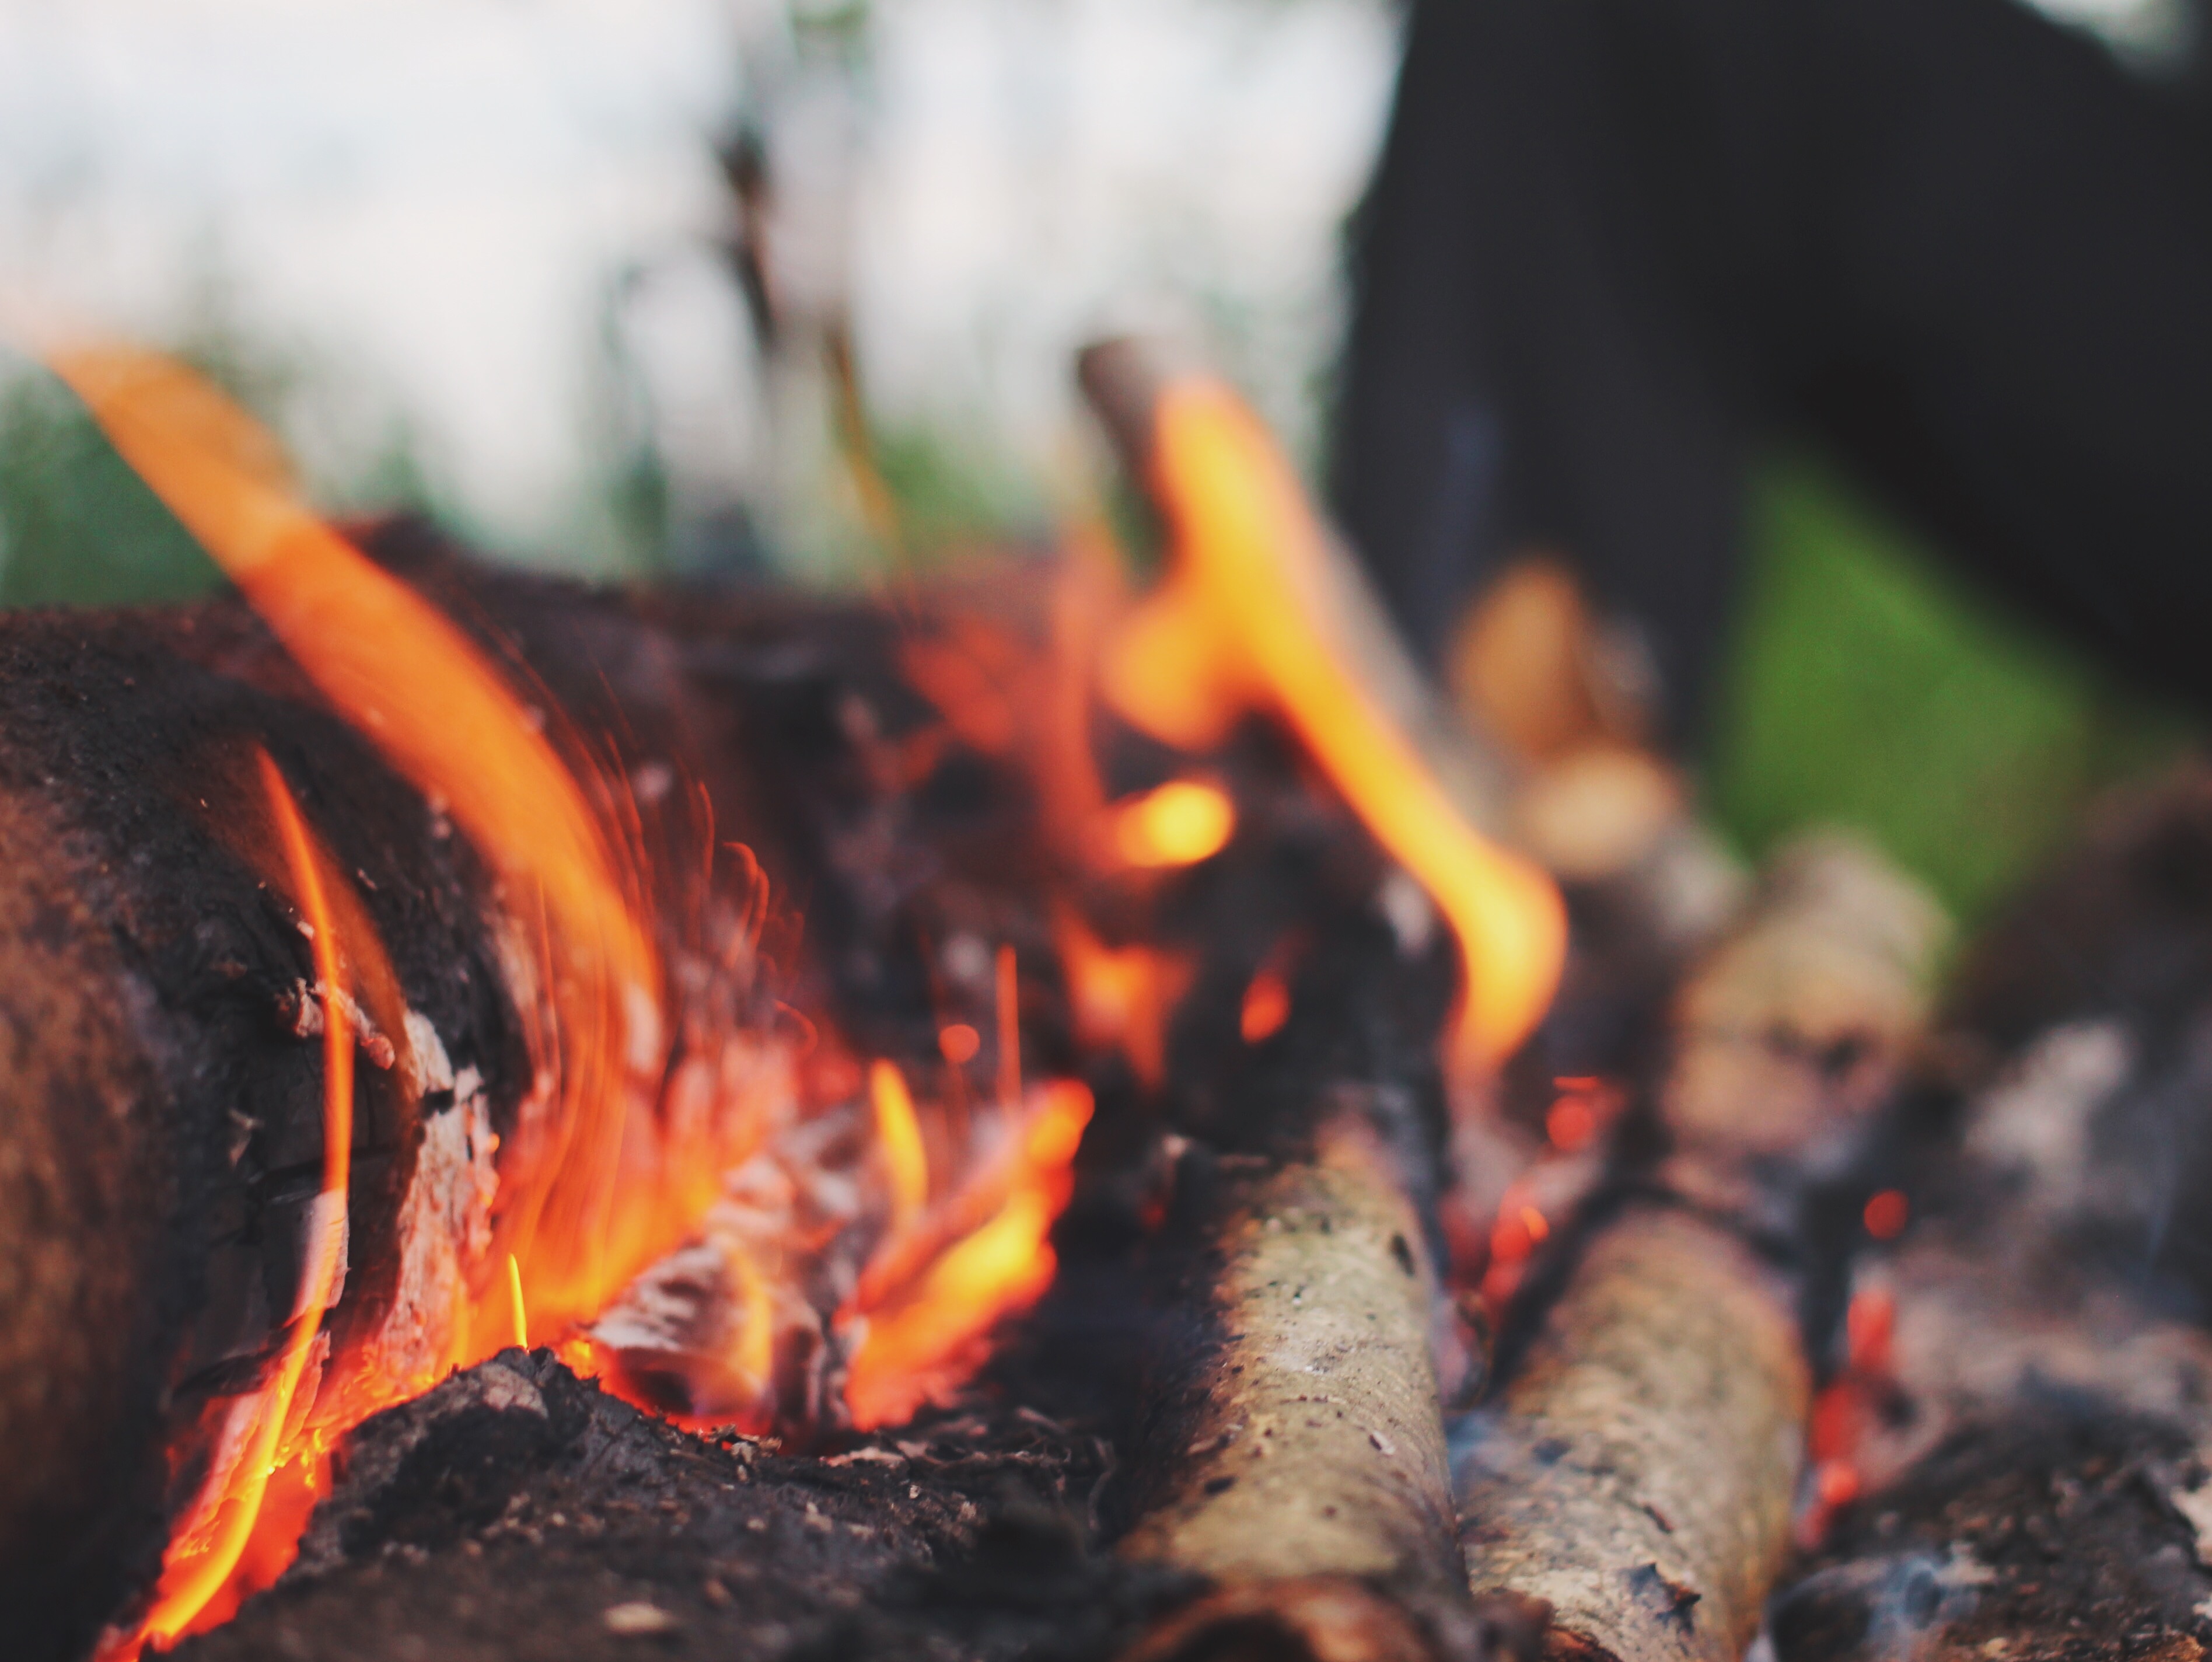 bonfire, fire, flames, wood, heat - temperature, flame